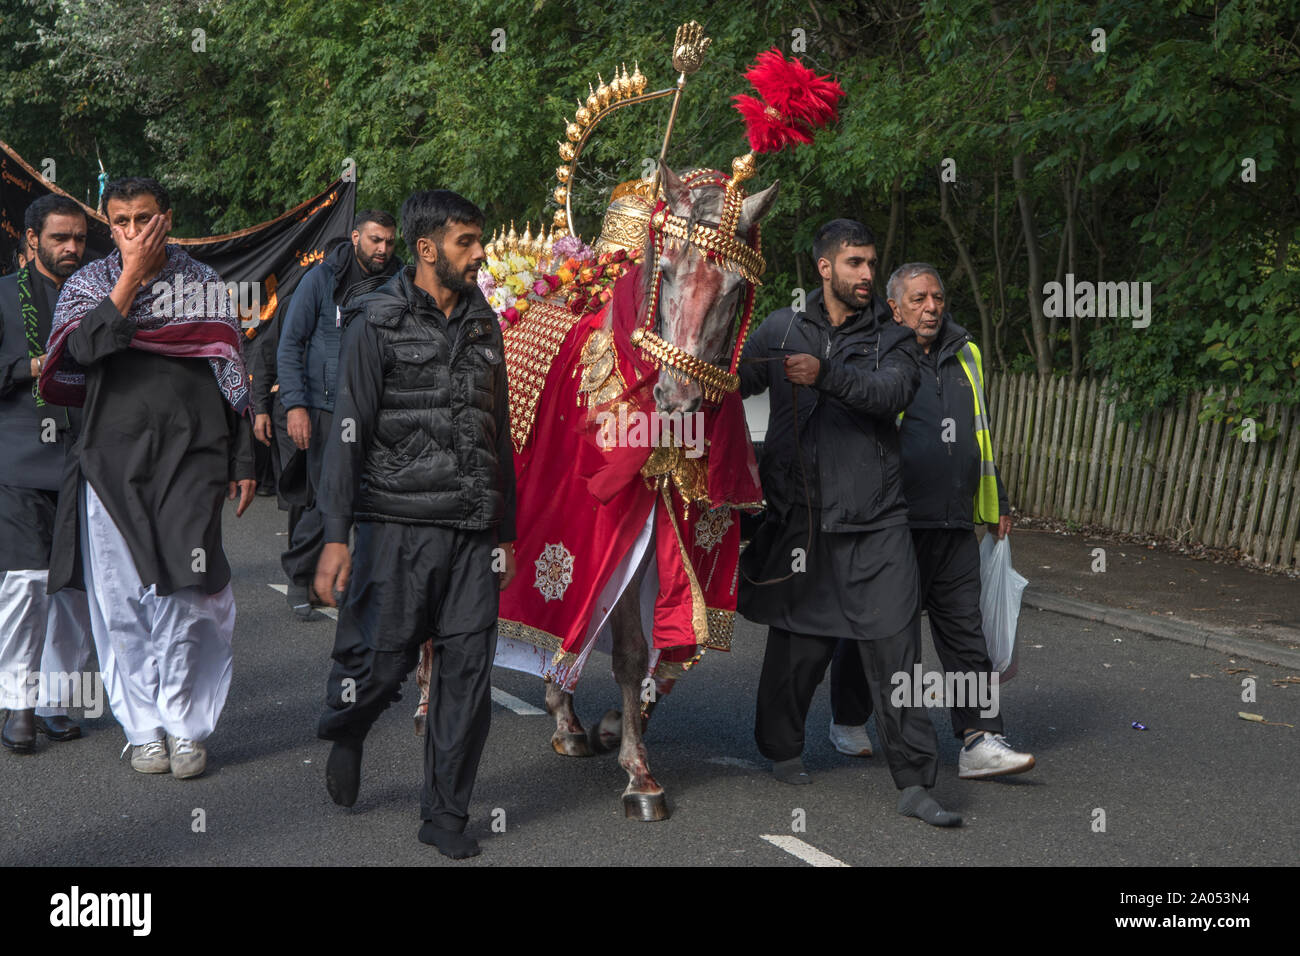 Muslimische Gemeinschaft Bradford 2019 2010 s UK. Tag der Ashura Parade der schiitischen Muslime erinnern das Martyrium von Hussain. Das Pferd stellt die Husain ibn Ali Ritt in die Schlacht von Kerbela HOMER SYKES Stockfoto